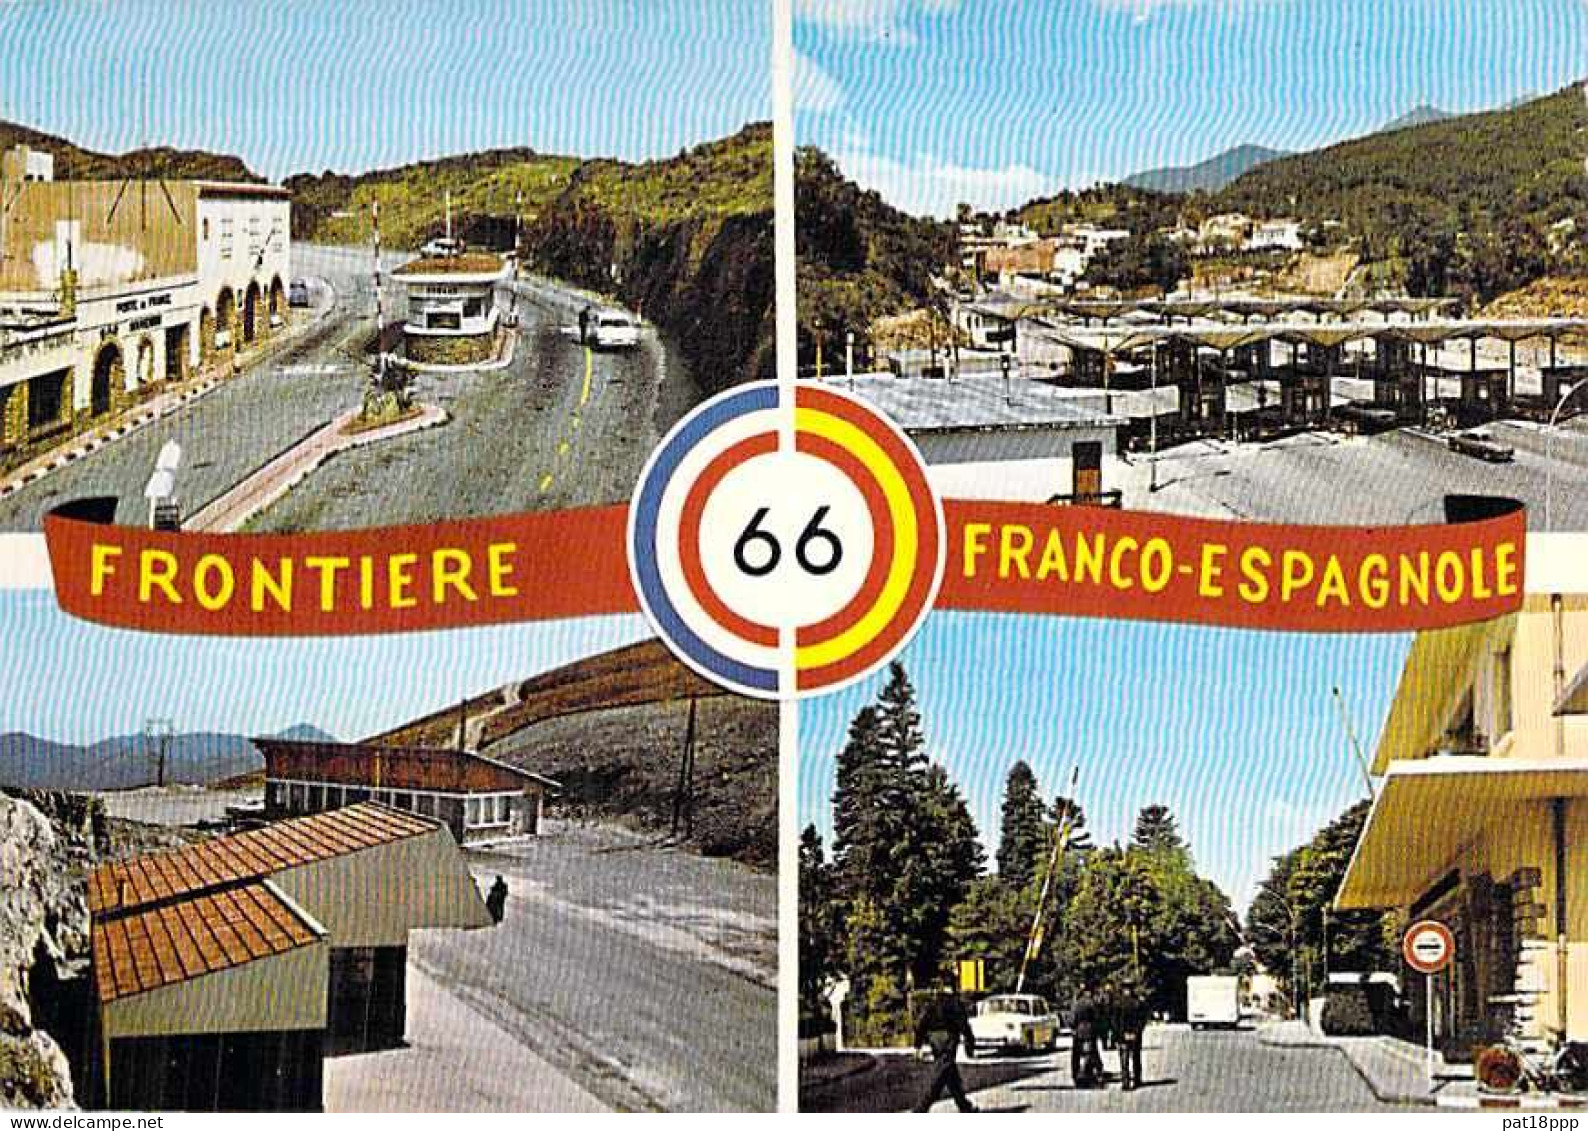 FRANCE - Lot de 20 cartes DOUANES & FRONTIERES (2 CPA - 6 CPSM PF - 7 CPSM GF - 5 CPM GF) + 2 cartes offertes